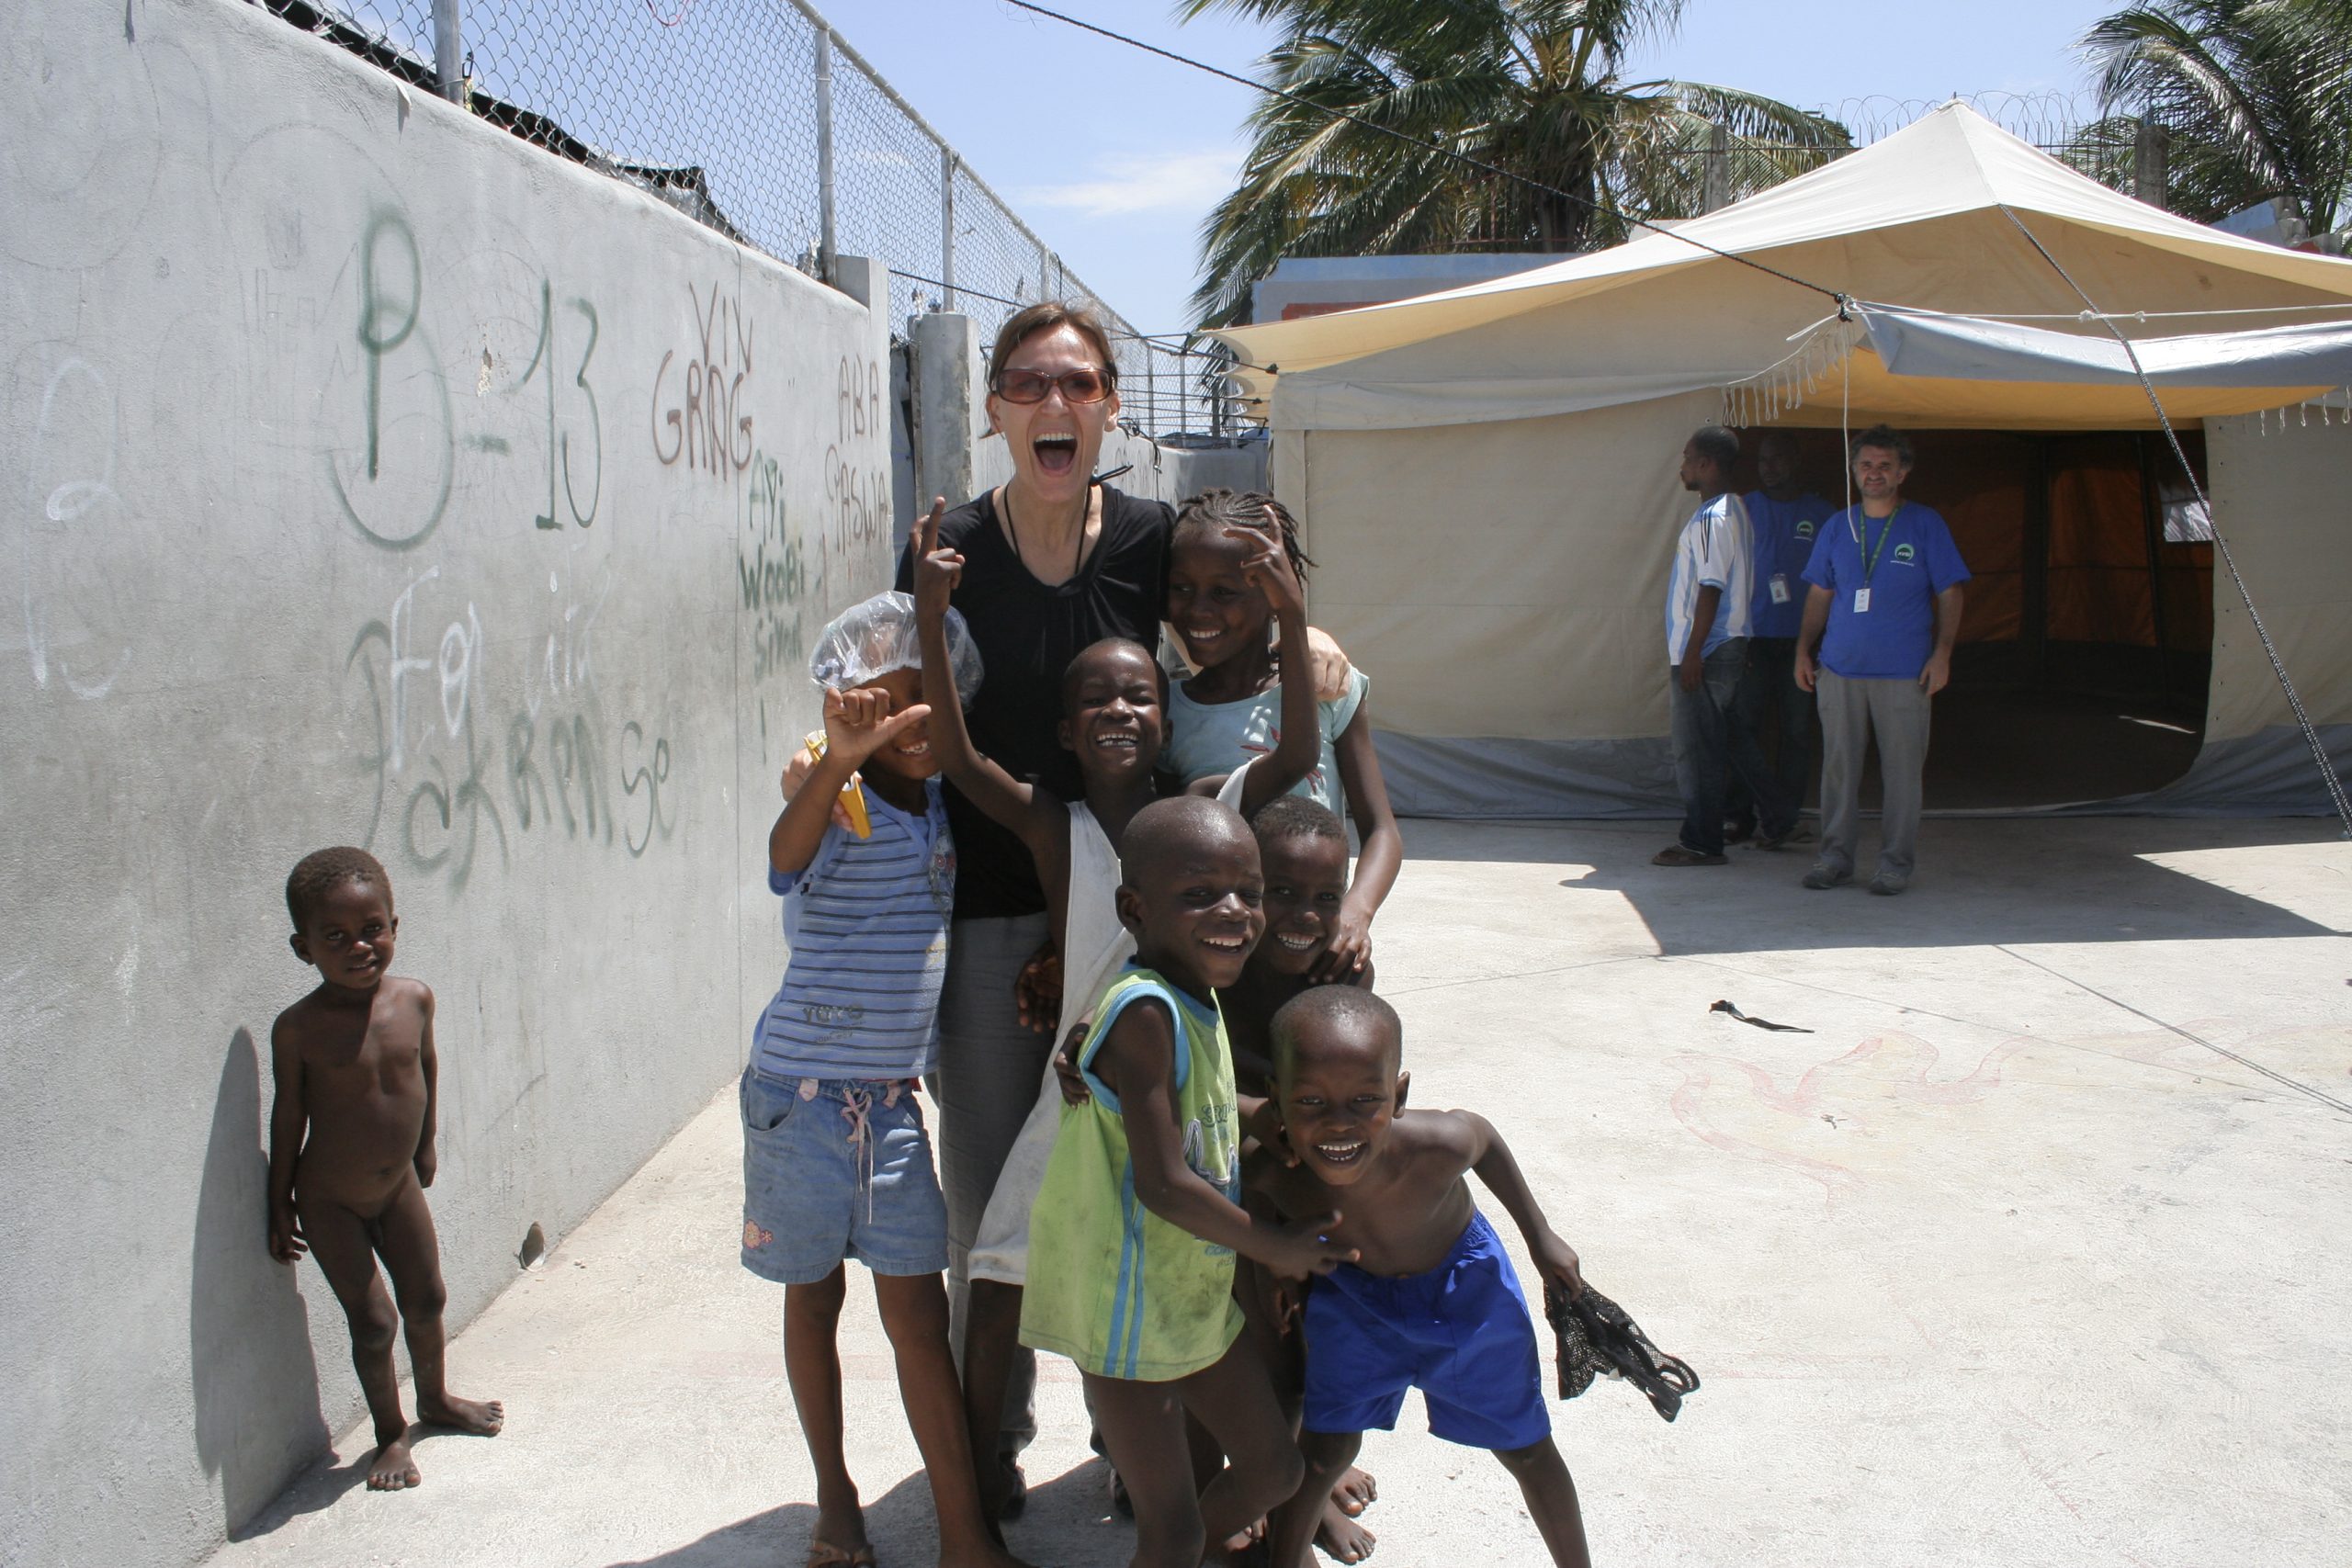 Michela Vianello - archivio che testimonia l'esperienza vissuta ad Haiti come consulenti tecnici in particolare per il rilevamento dello stato delle strutture scolastiche presenti nelle due slam di Port au prince: Martissant e CitÈ soleil. Il periodo in cui si Ë svolta la missione Ë giugno e luglio del 2010 dopo il terremoto.